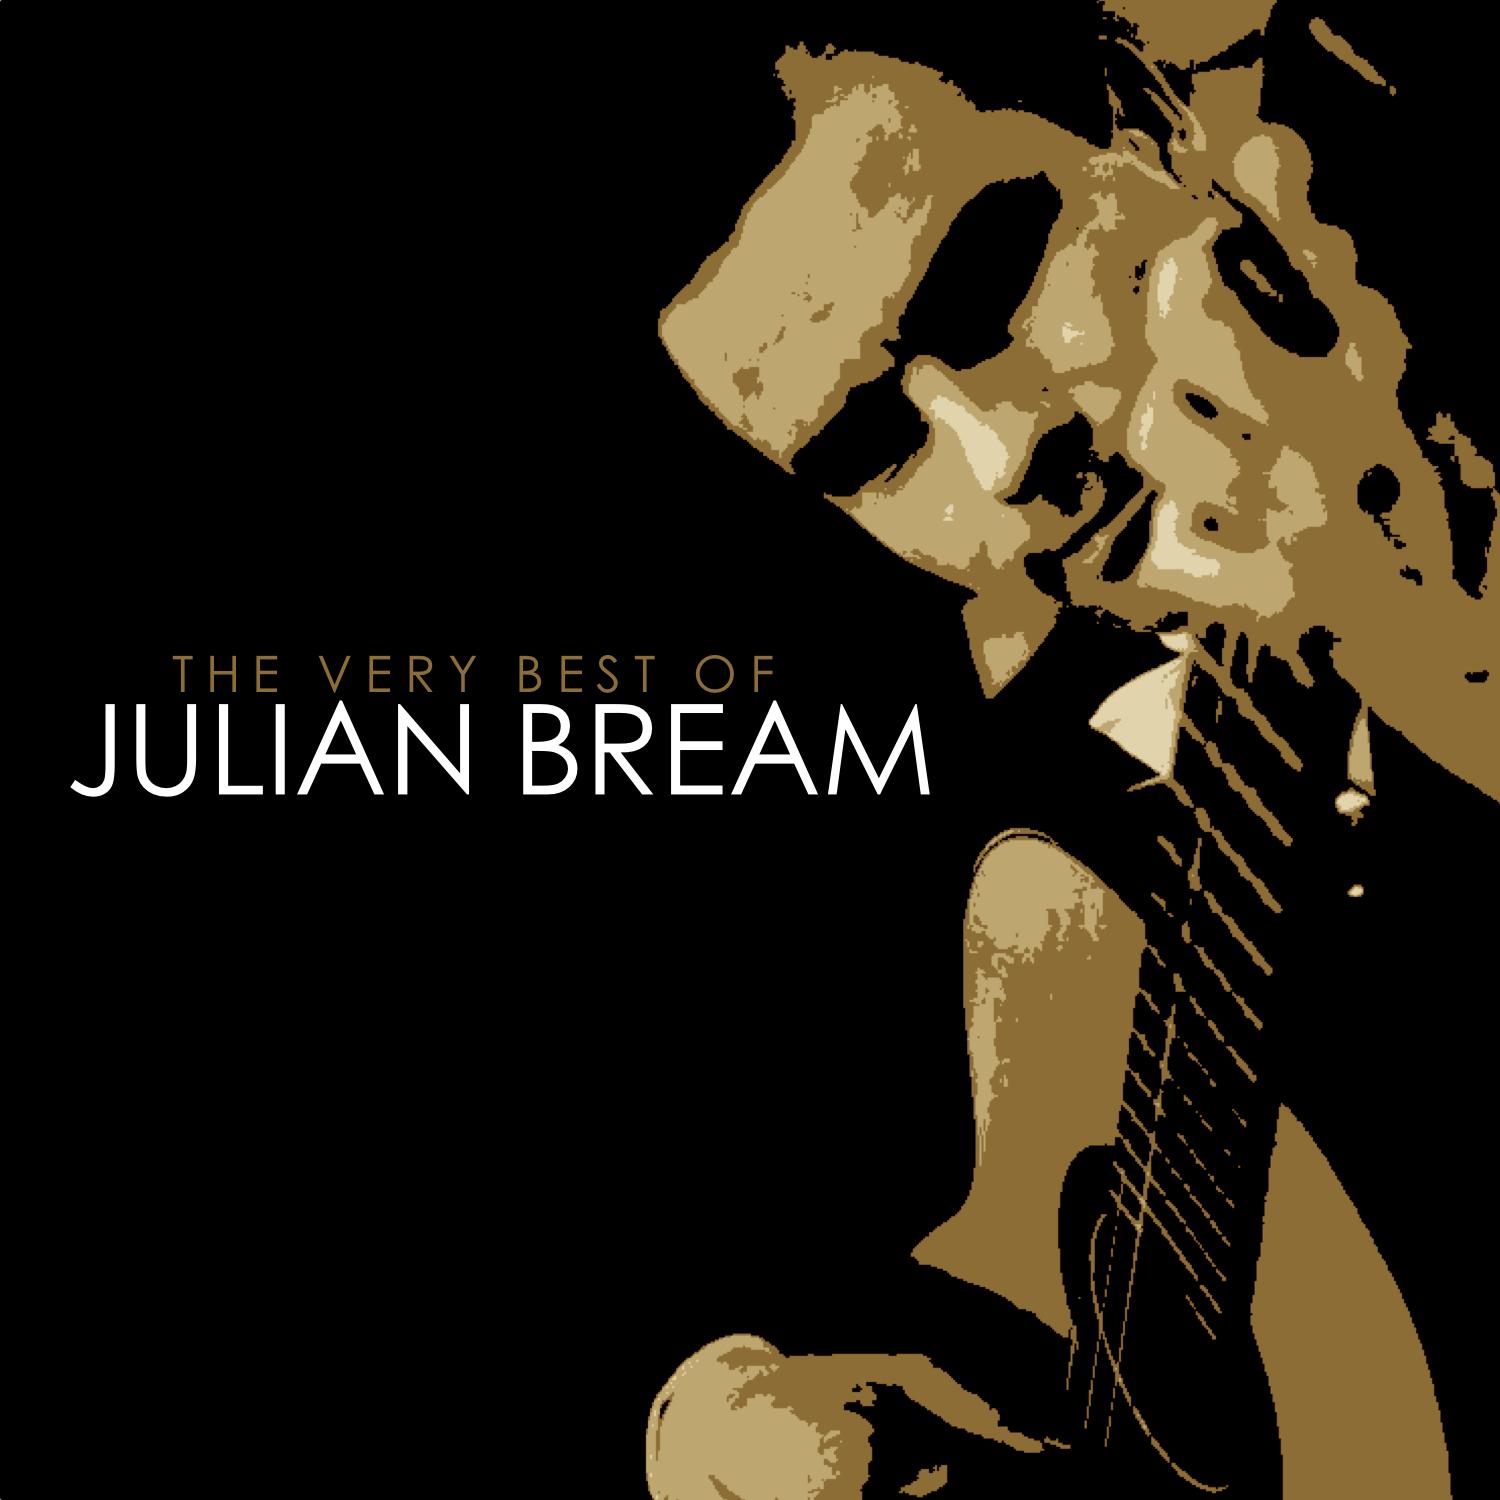 The Very Best of Julian Bream